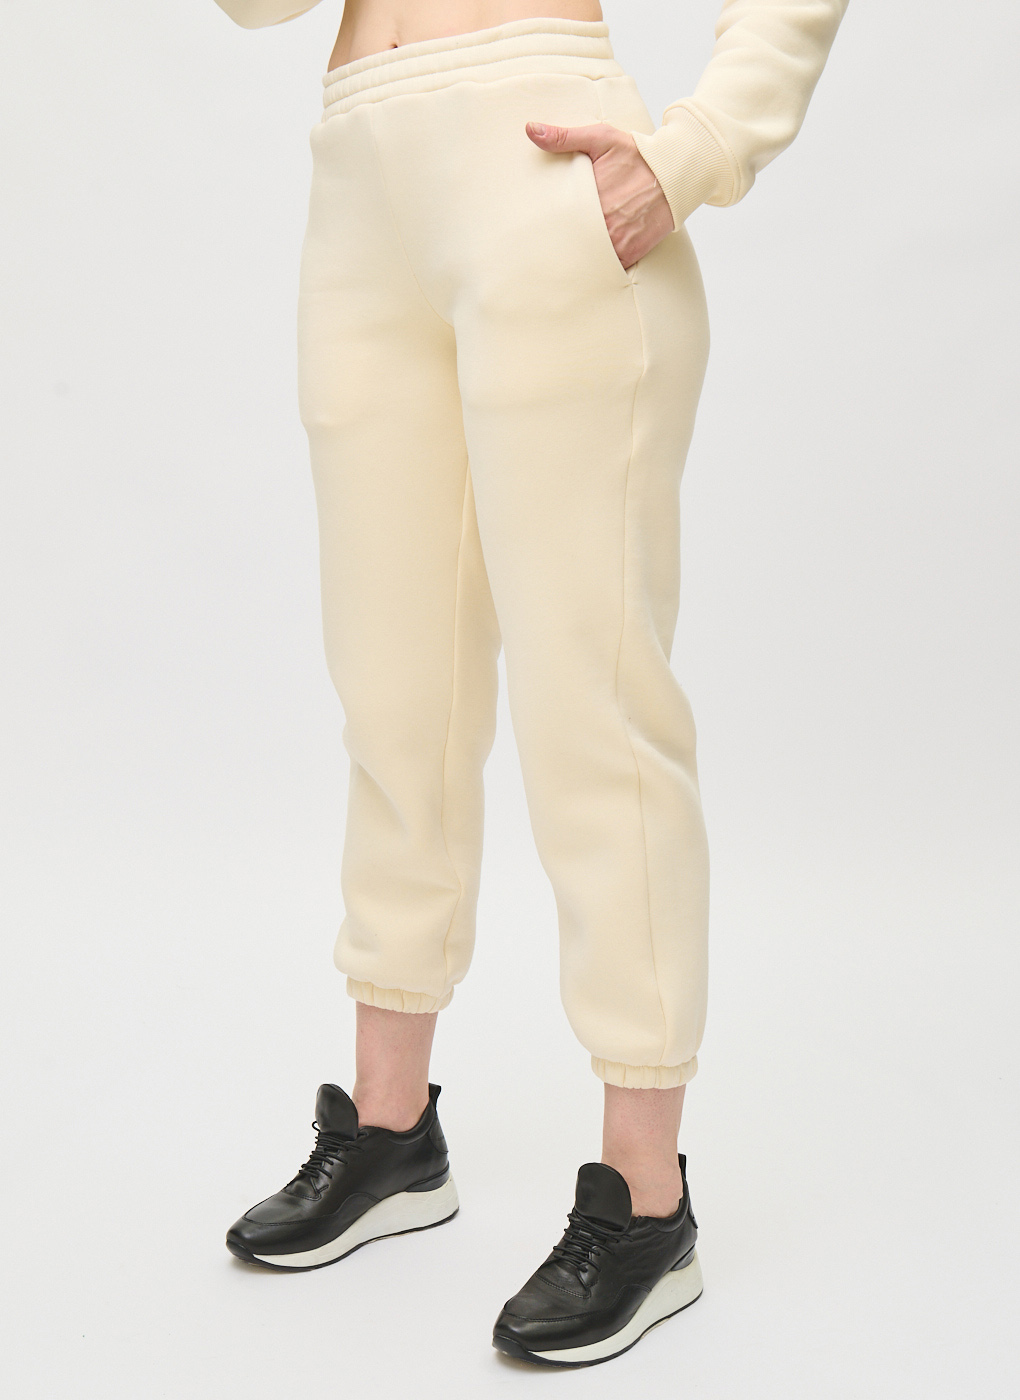 Спортивные брюки женские TANINI 64645 белые 54 RU